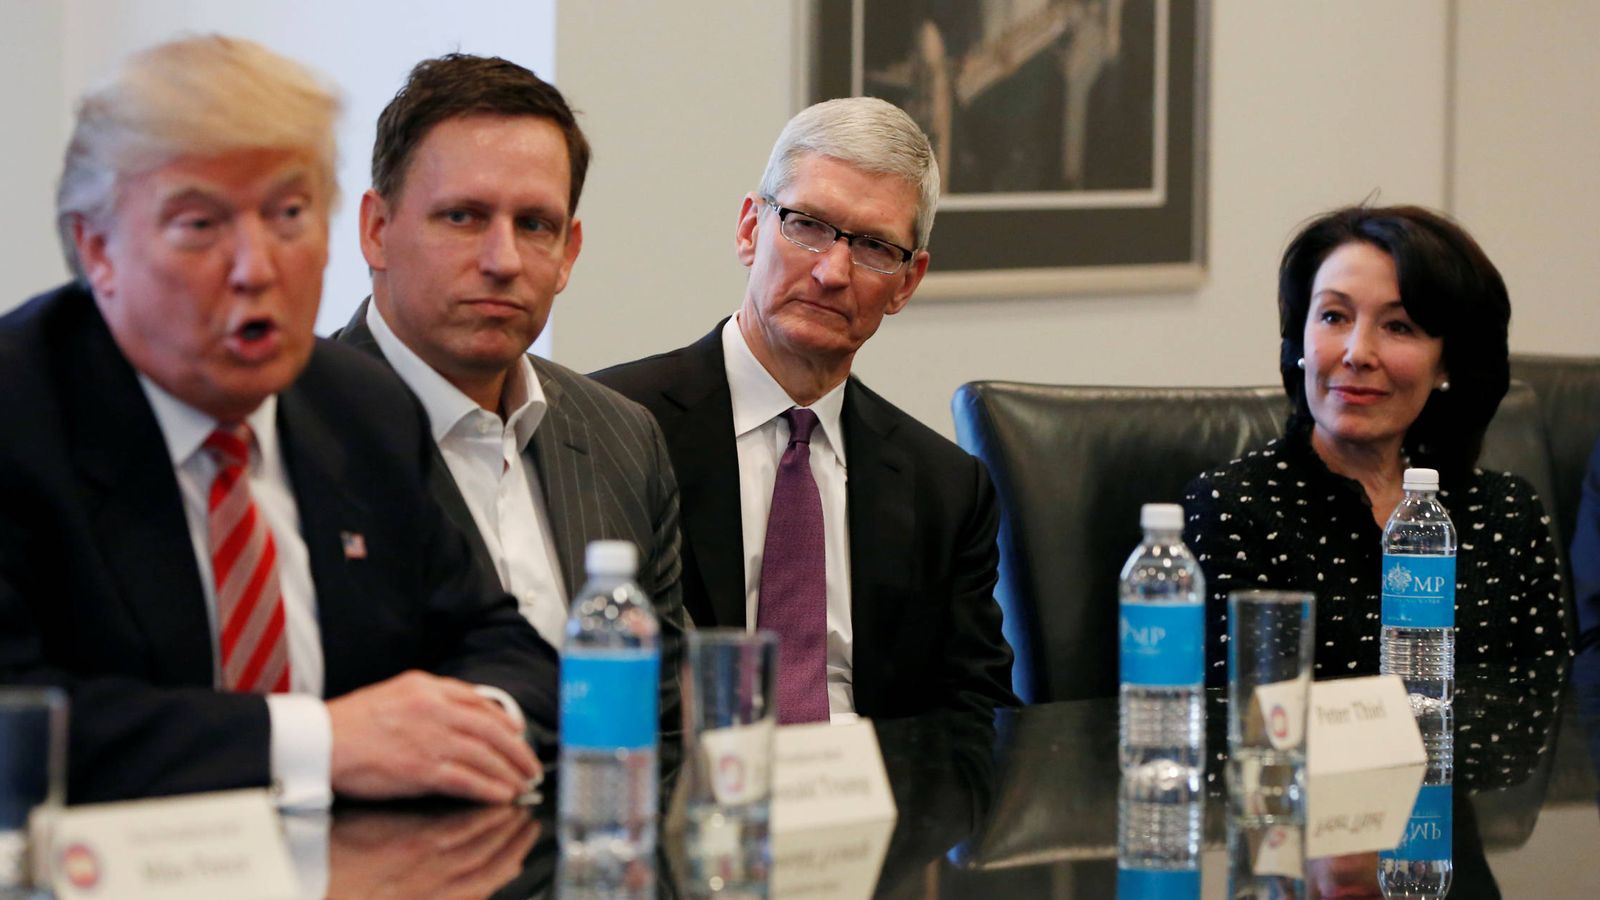 Foto: Tim Cook, CEO de Apple, en una reunión con Donald Trump pocos días después de que el presidente hubiera ganado las elecciones. (Reuters)